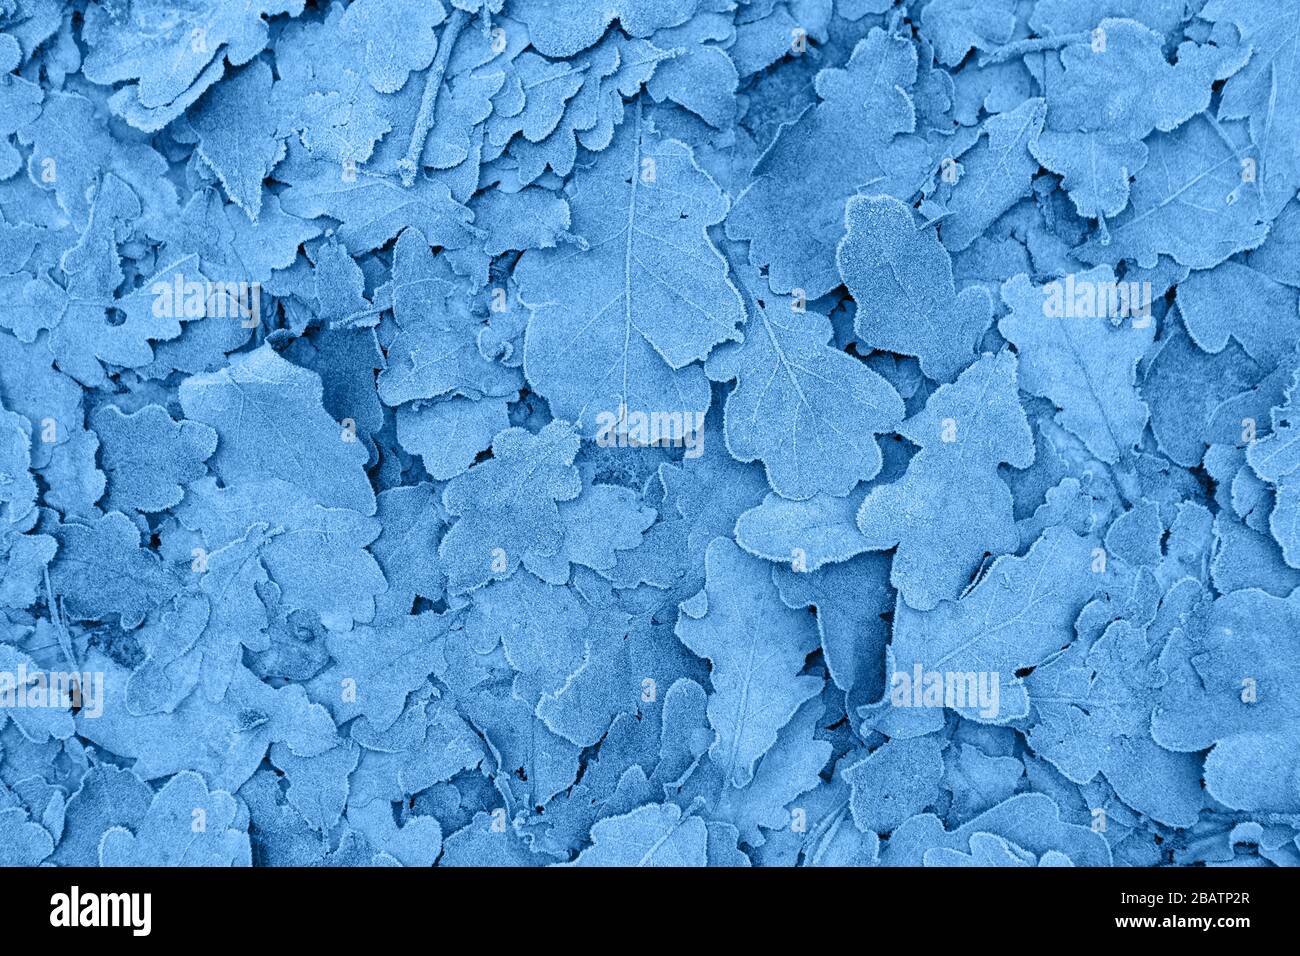 Feuilles congelées fond, couleur de l'année 2020 Pantone classique bleu 19-4052 Banque D'Images